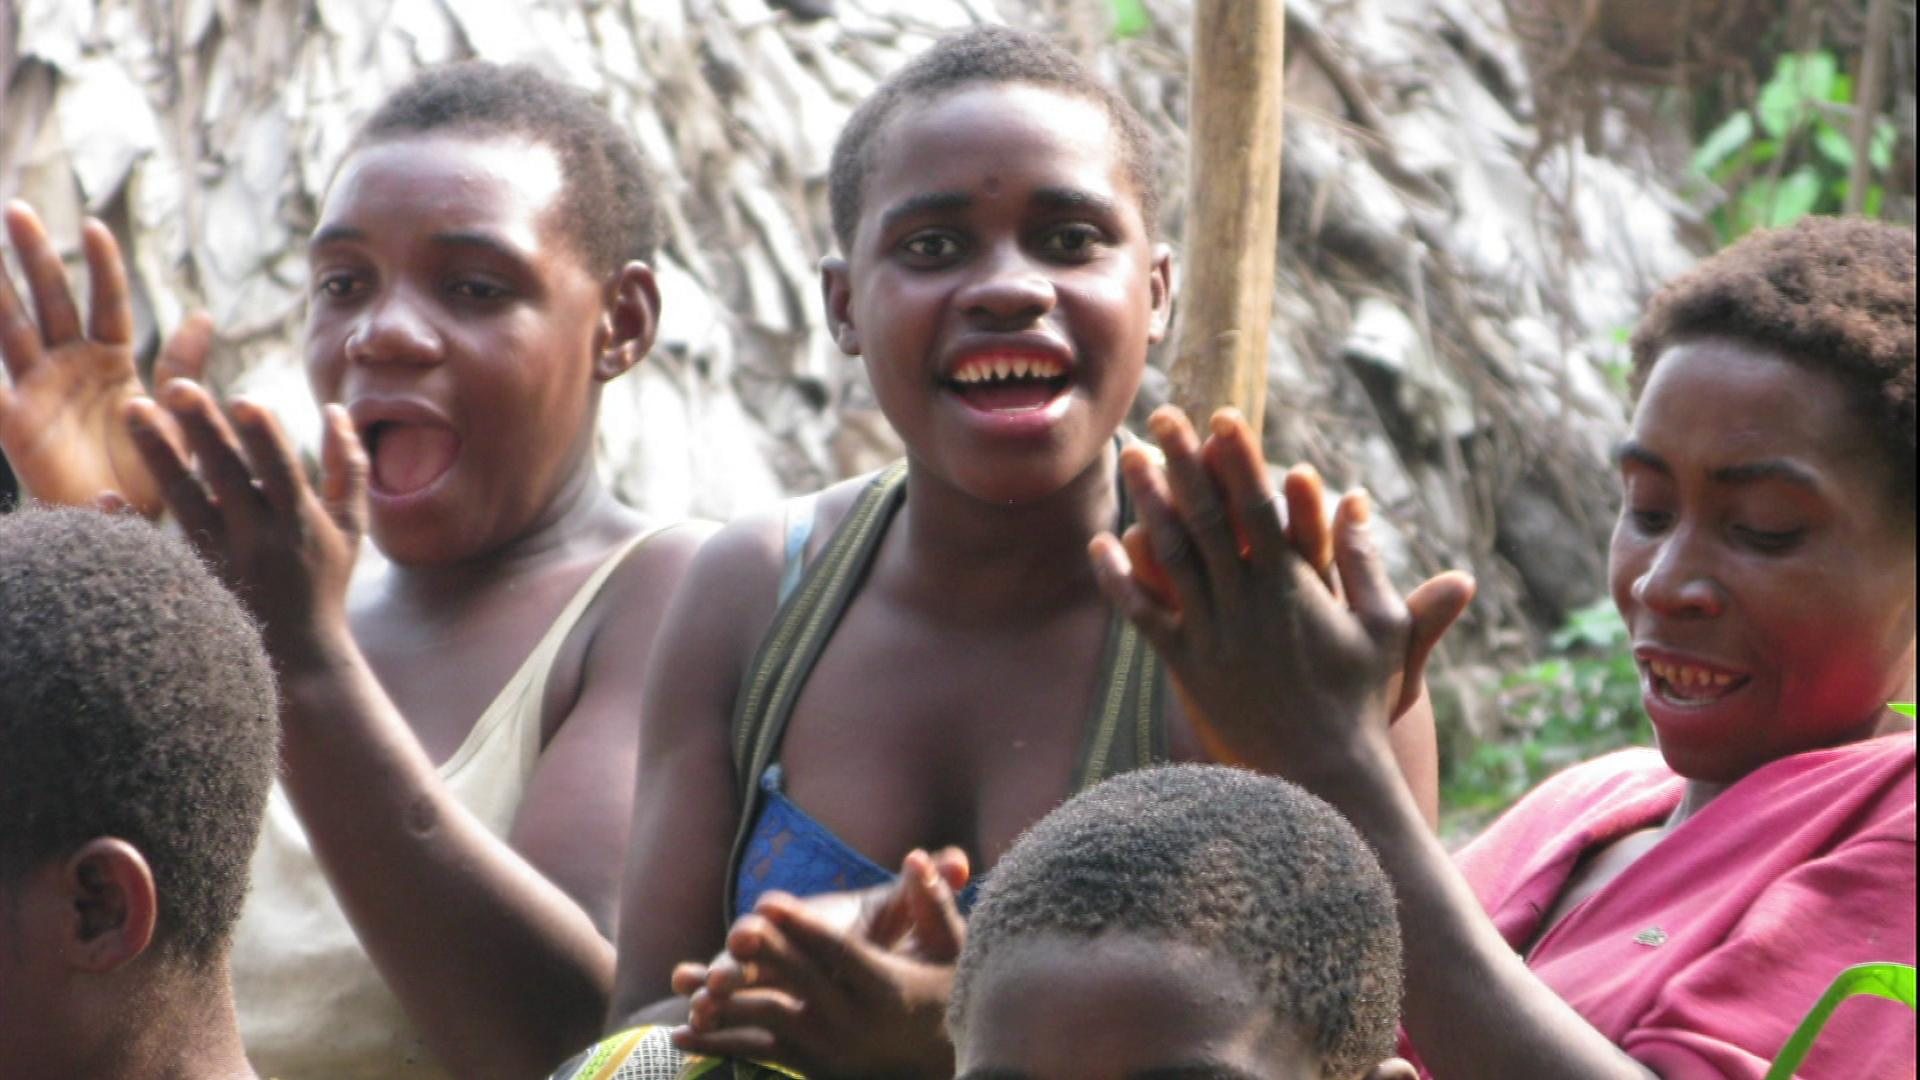 Bayaka women singing in Congo rainforest